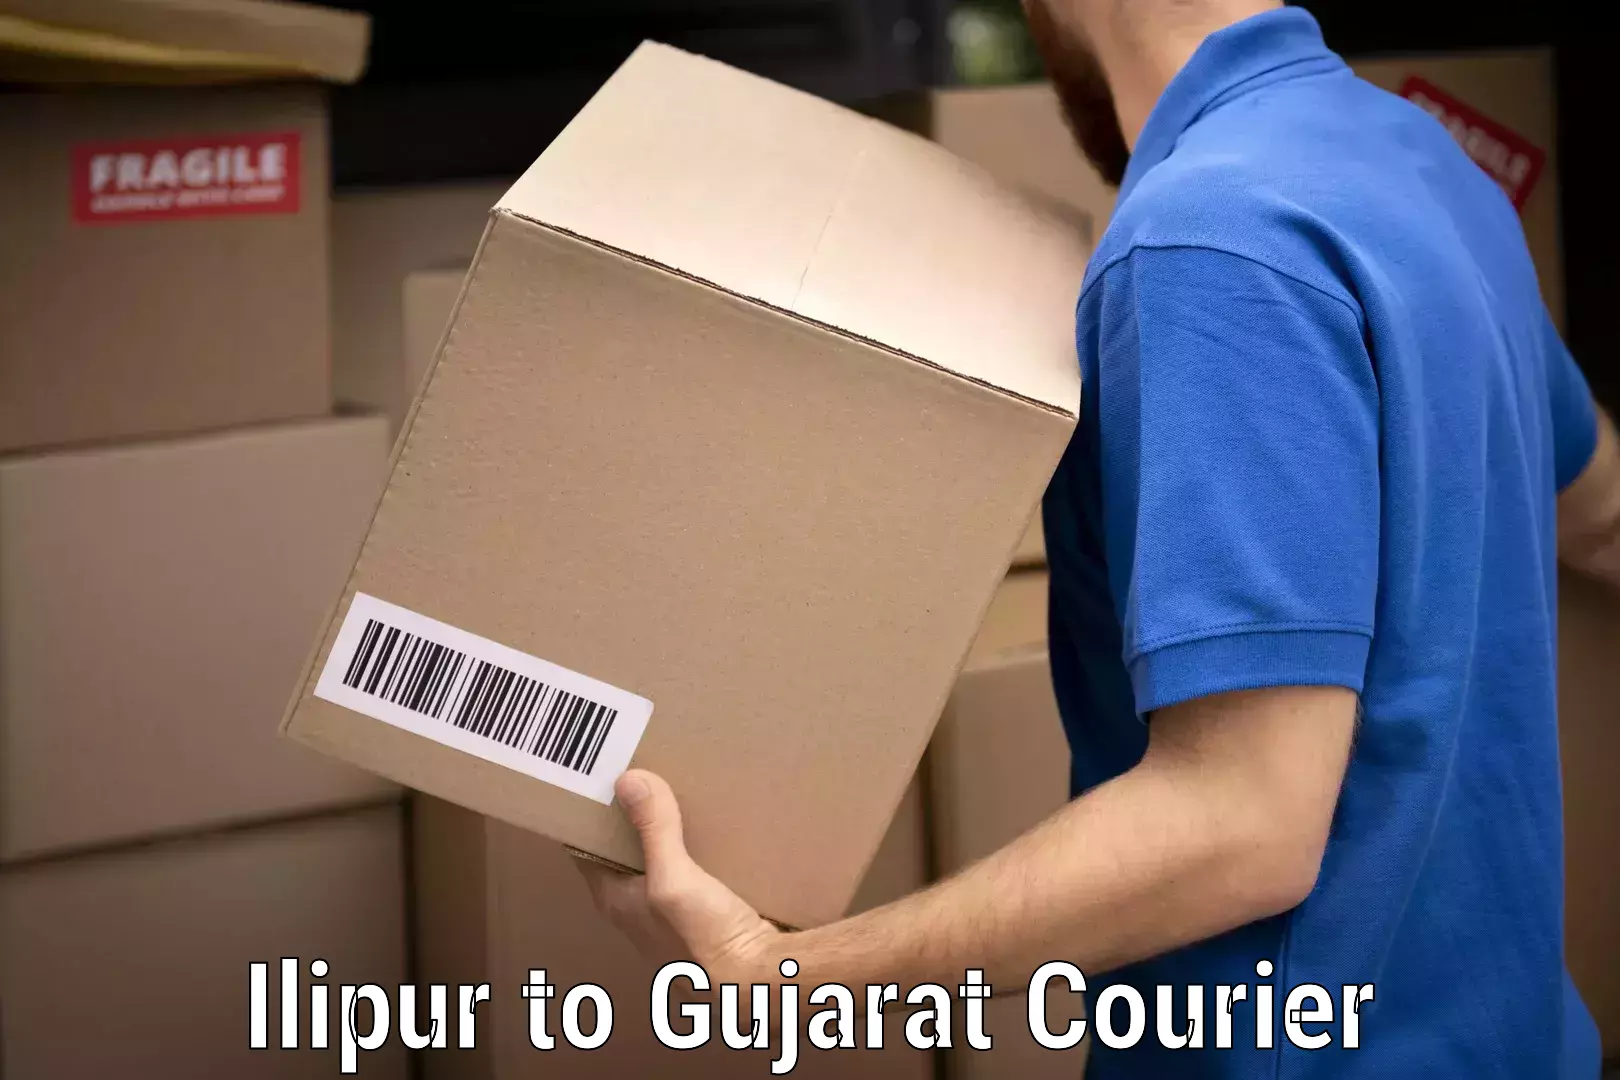 Furniture transport specialists Ilipur to Gujarat